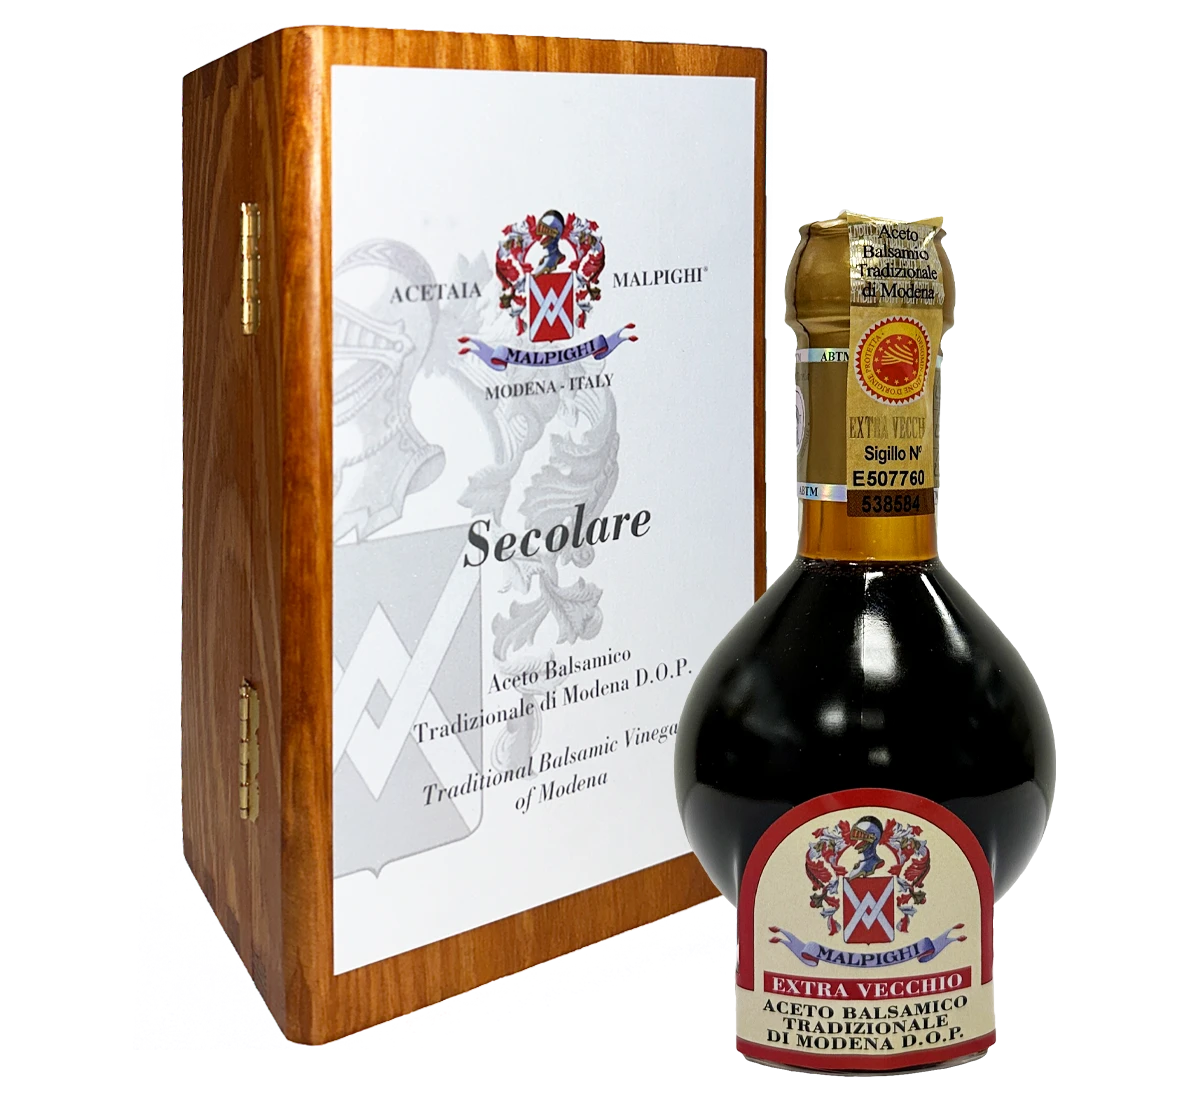 Aceto Balsamico Tradizionale di Modena DOP - Extra Vecchio - "Secolare" (100 ml.)